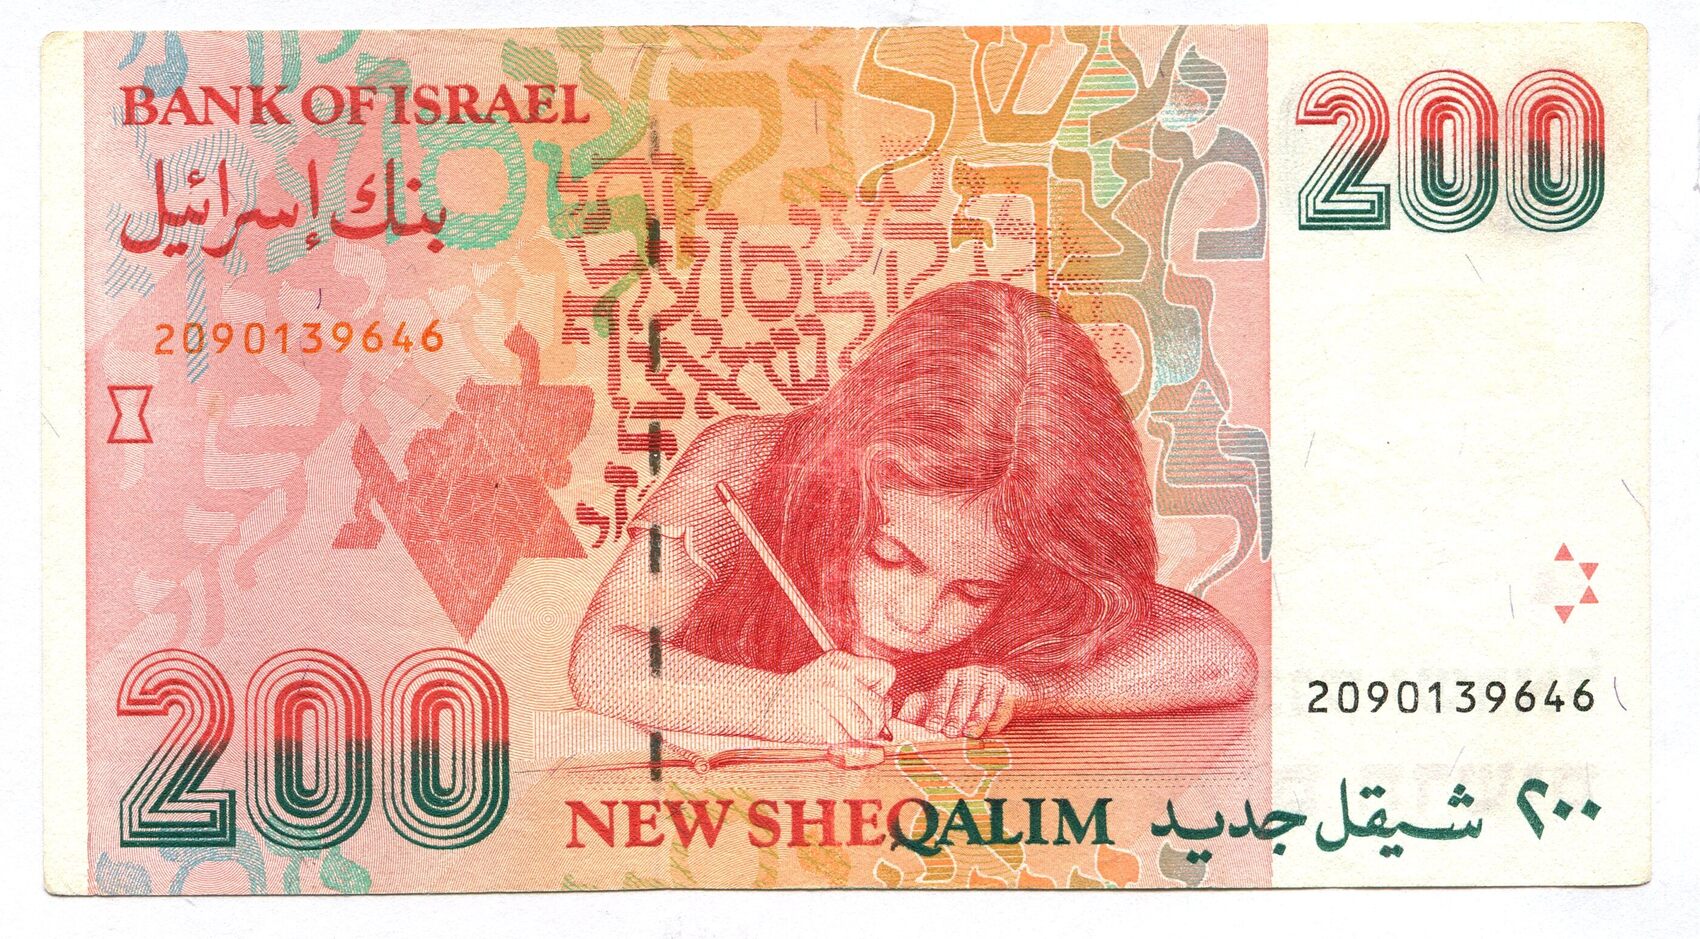 Еврейские деньги. Банкноты Израиля 200 шекелей. 200 Израильских лир купюра. Новый израильский шекель банкноты.